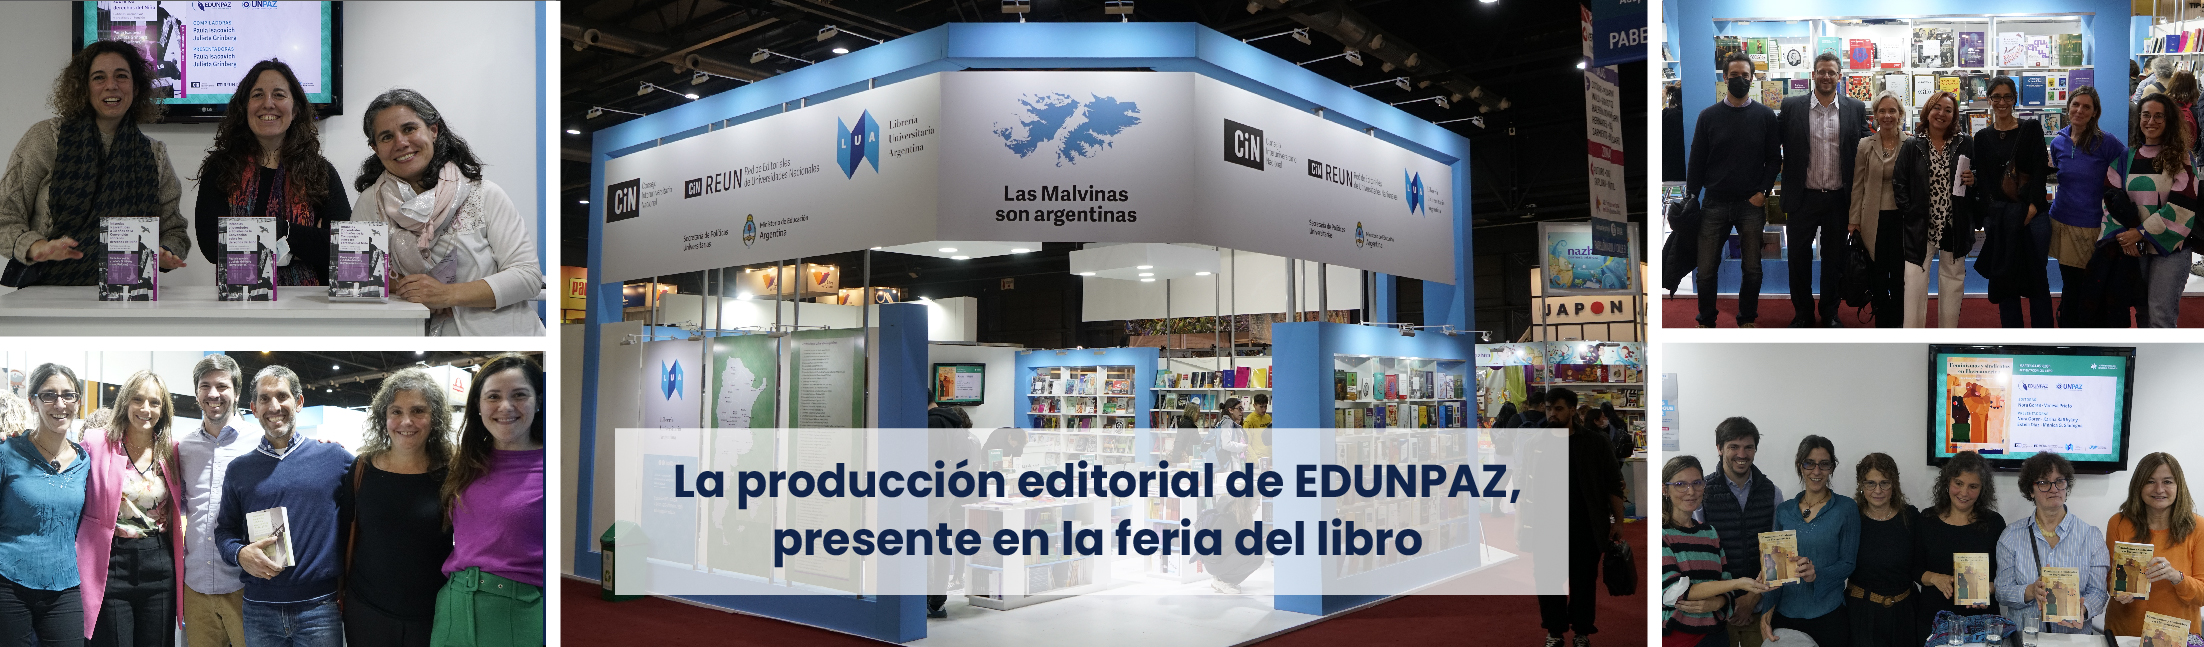 La producción editorial de EDUNPAZ, presente en la feria del libro